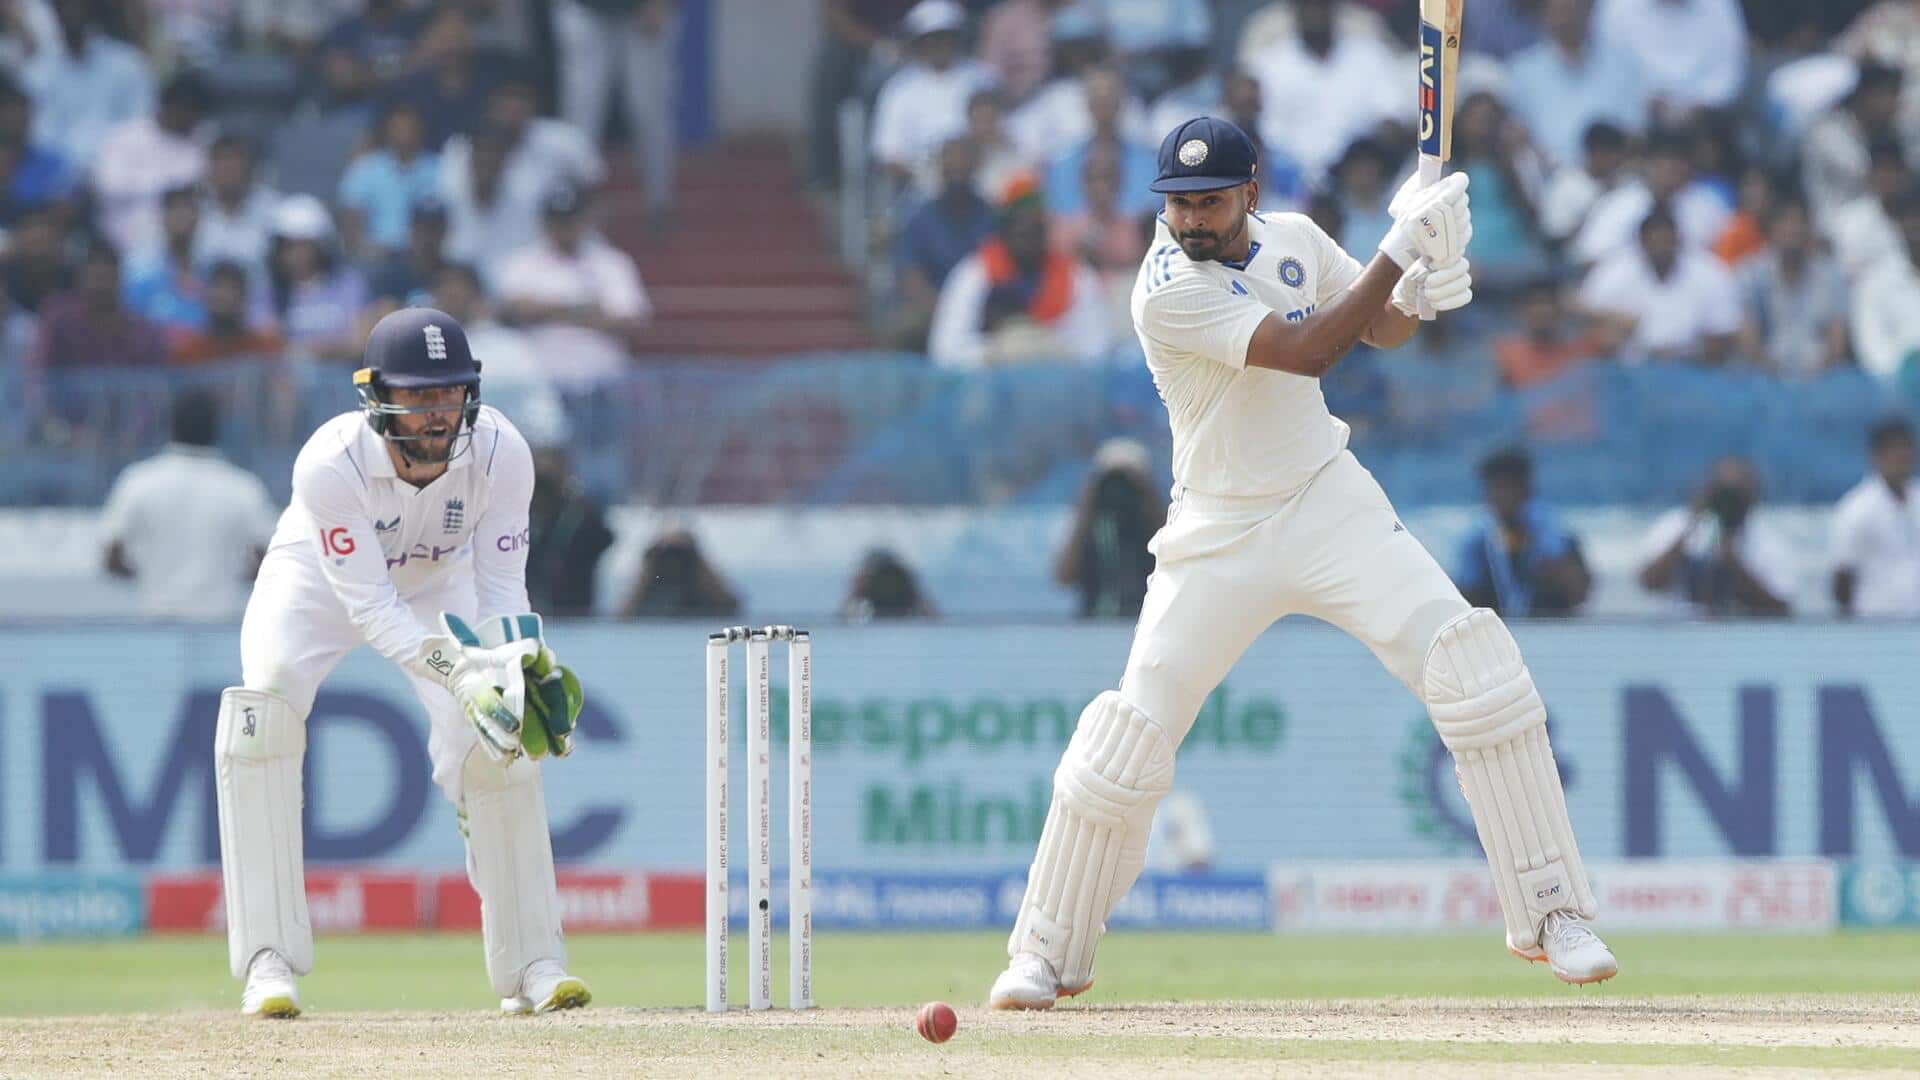 श्रेयस अय्यर ने गंवाई भारतीय टेस्ट टीम से जगह, जानिए उनके कमजोर आंकड़े